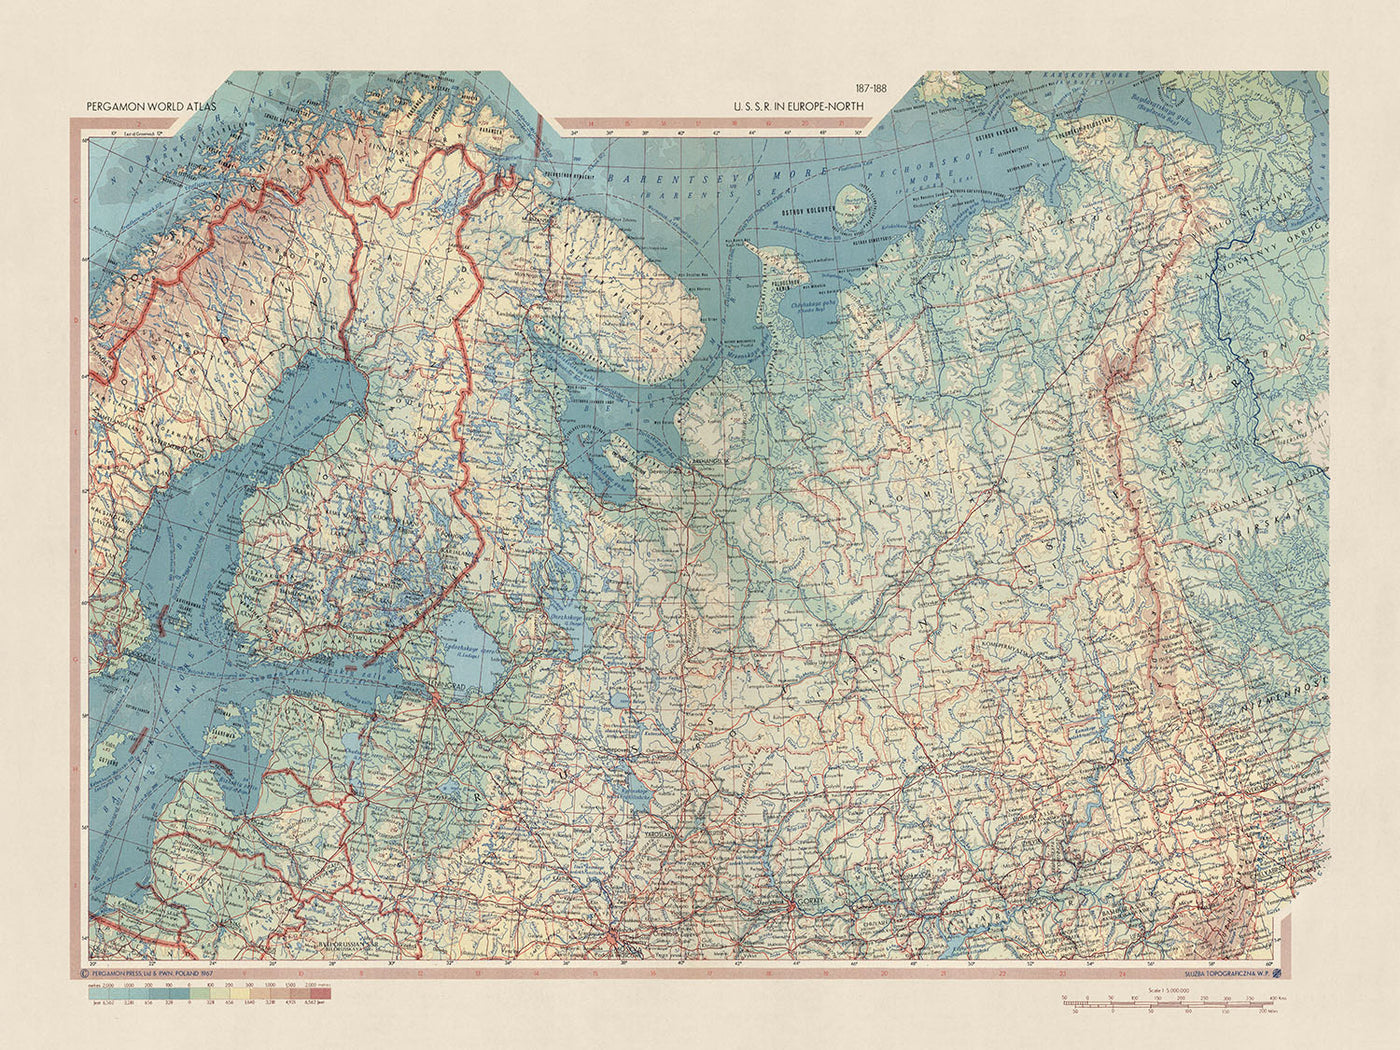 Ancienne carte de l'URSS en Europe (Nord) par le service topographique de l'armée polonaise, 1967 : Estonie, Finlande, Lettonie, Russie, caractéristiques politiques et physiques détaillées